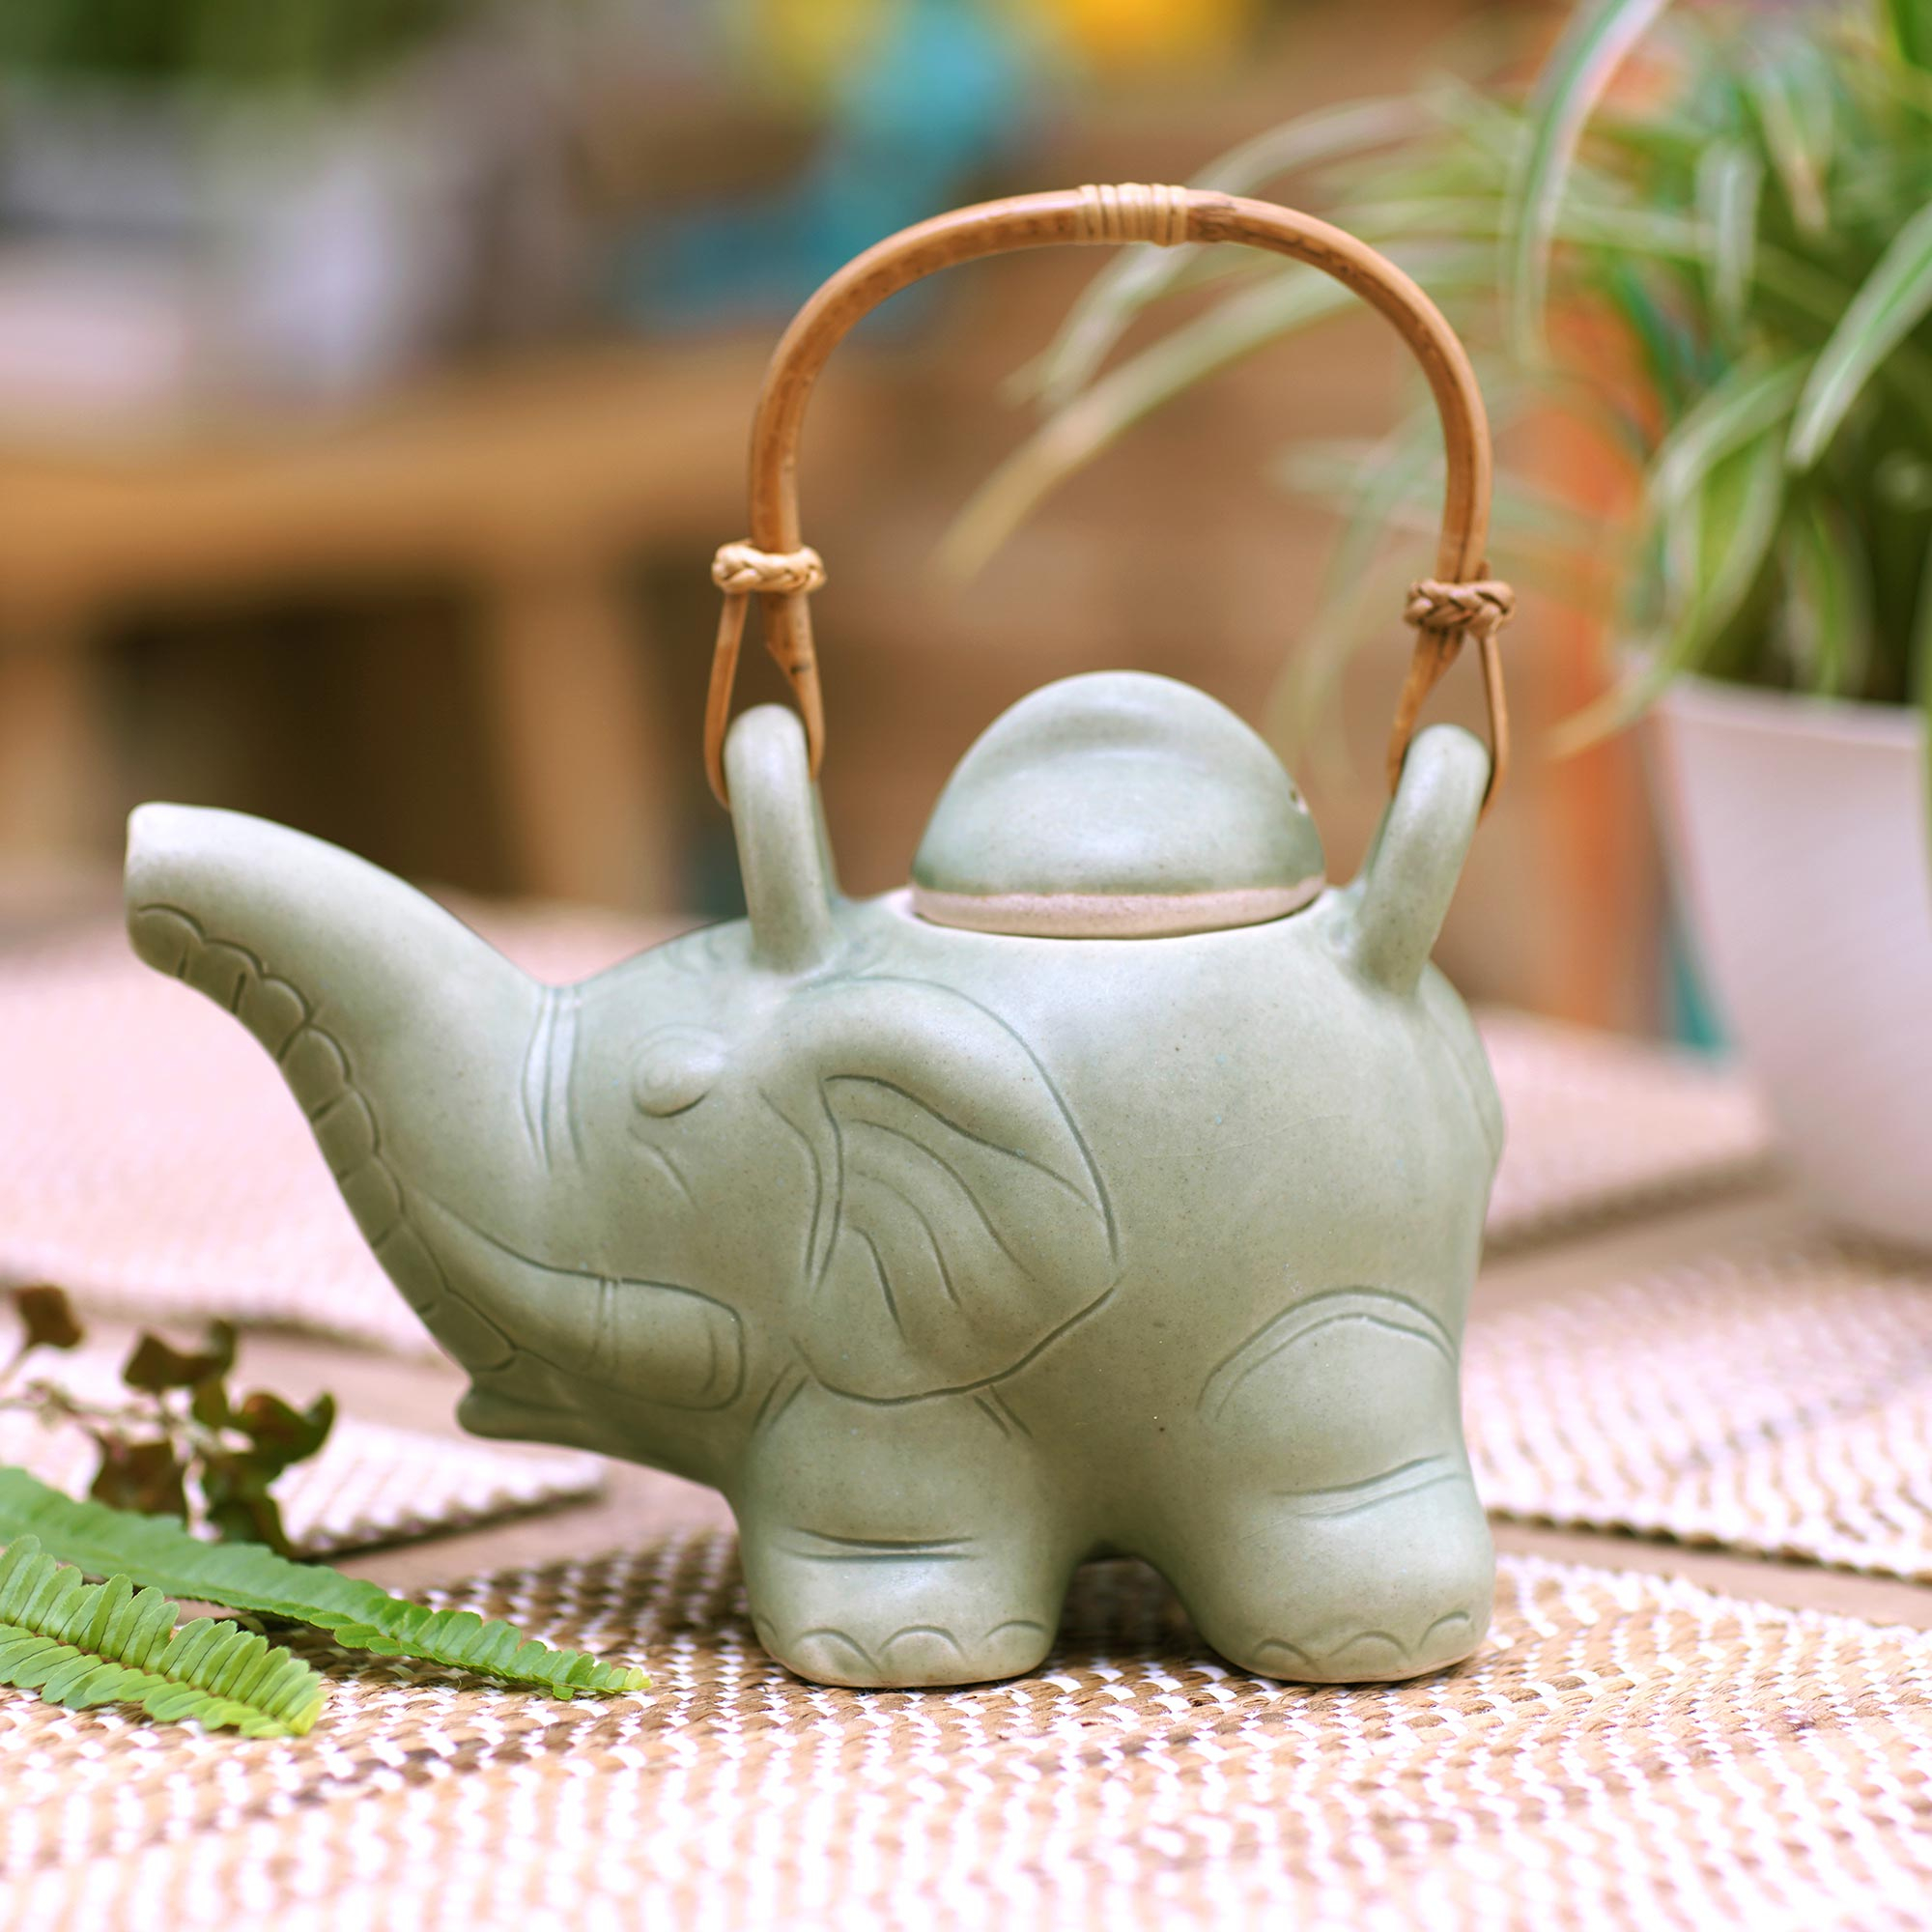 Elephant Tea Mug with Tea Bag Holder,Elephant Tea Cup 